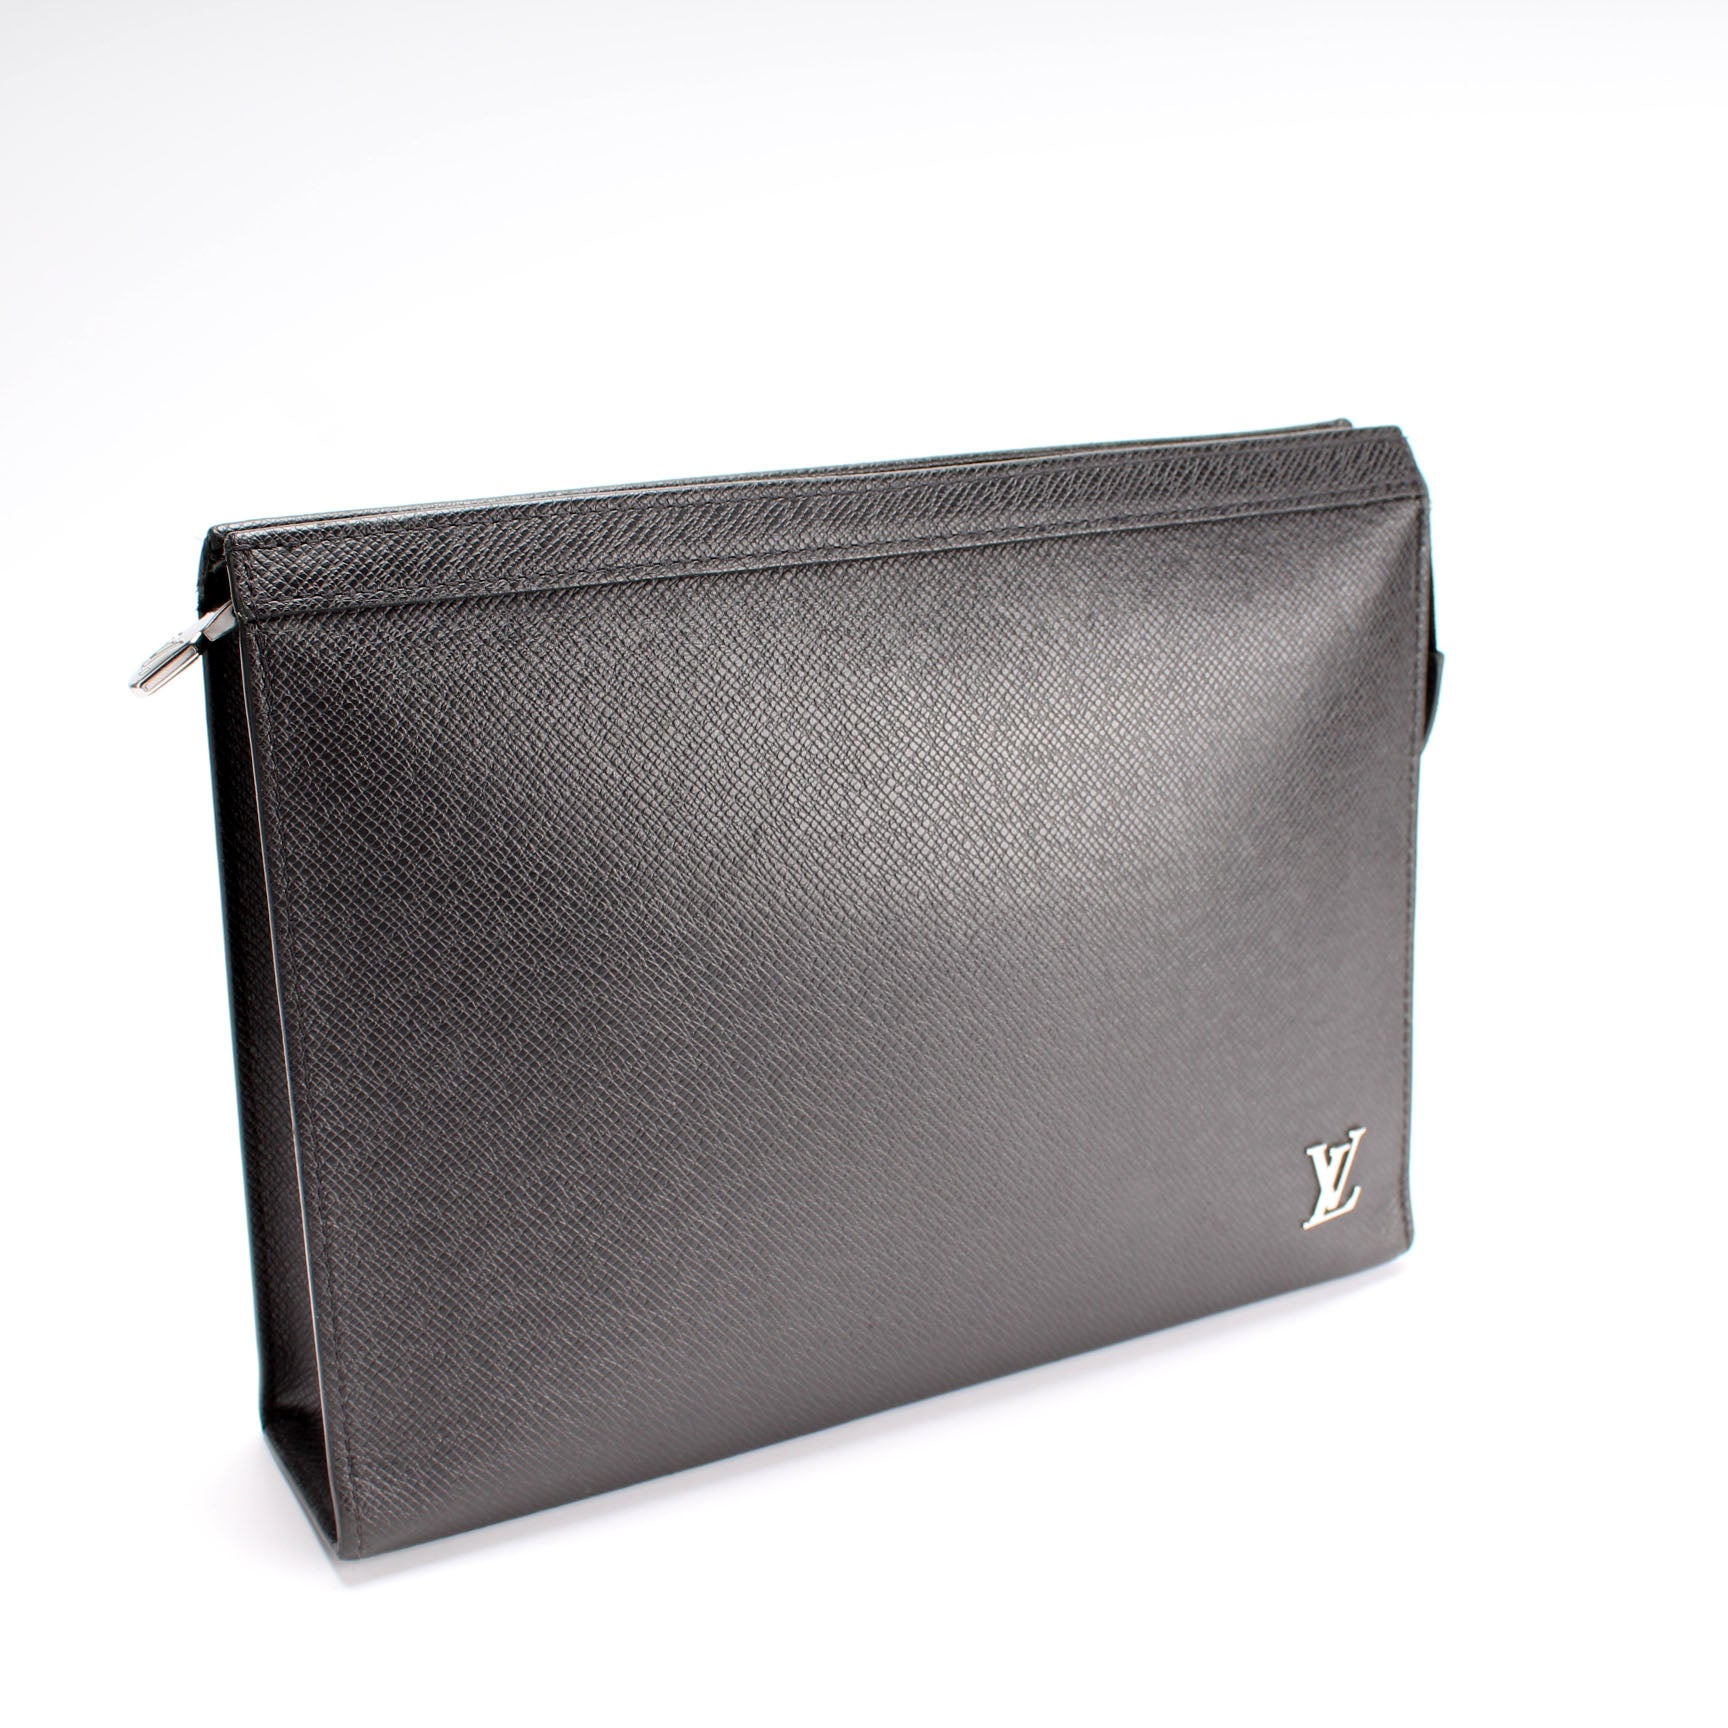 Louis Vuitton Pochette Voyage Taiga Leather